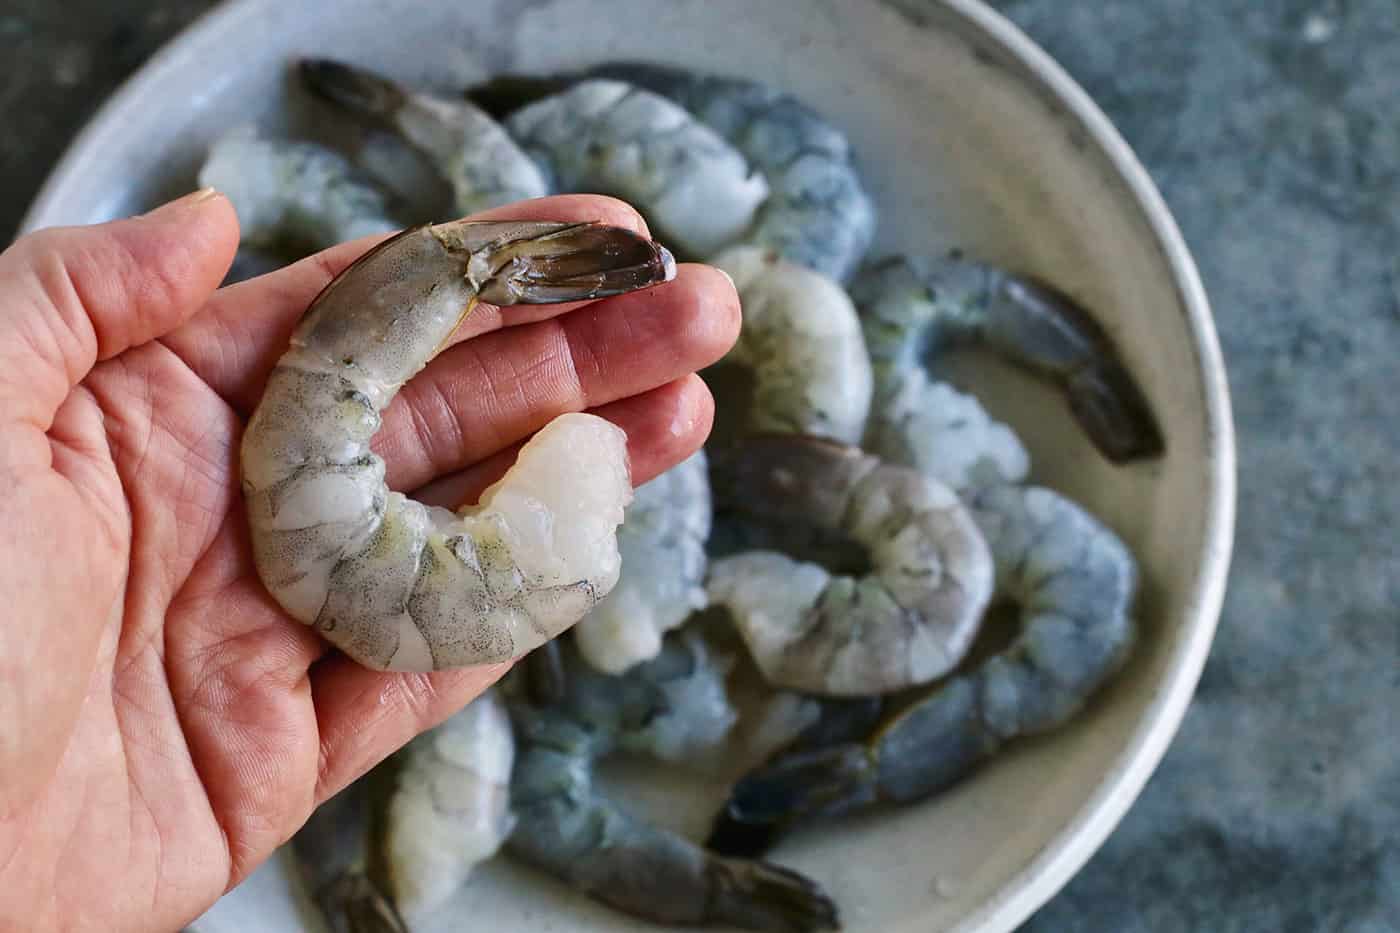 A hand holding a jumbo shrimp.